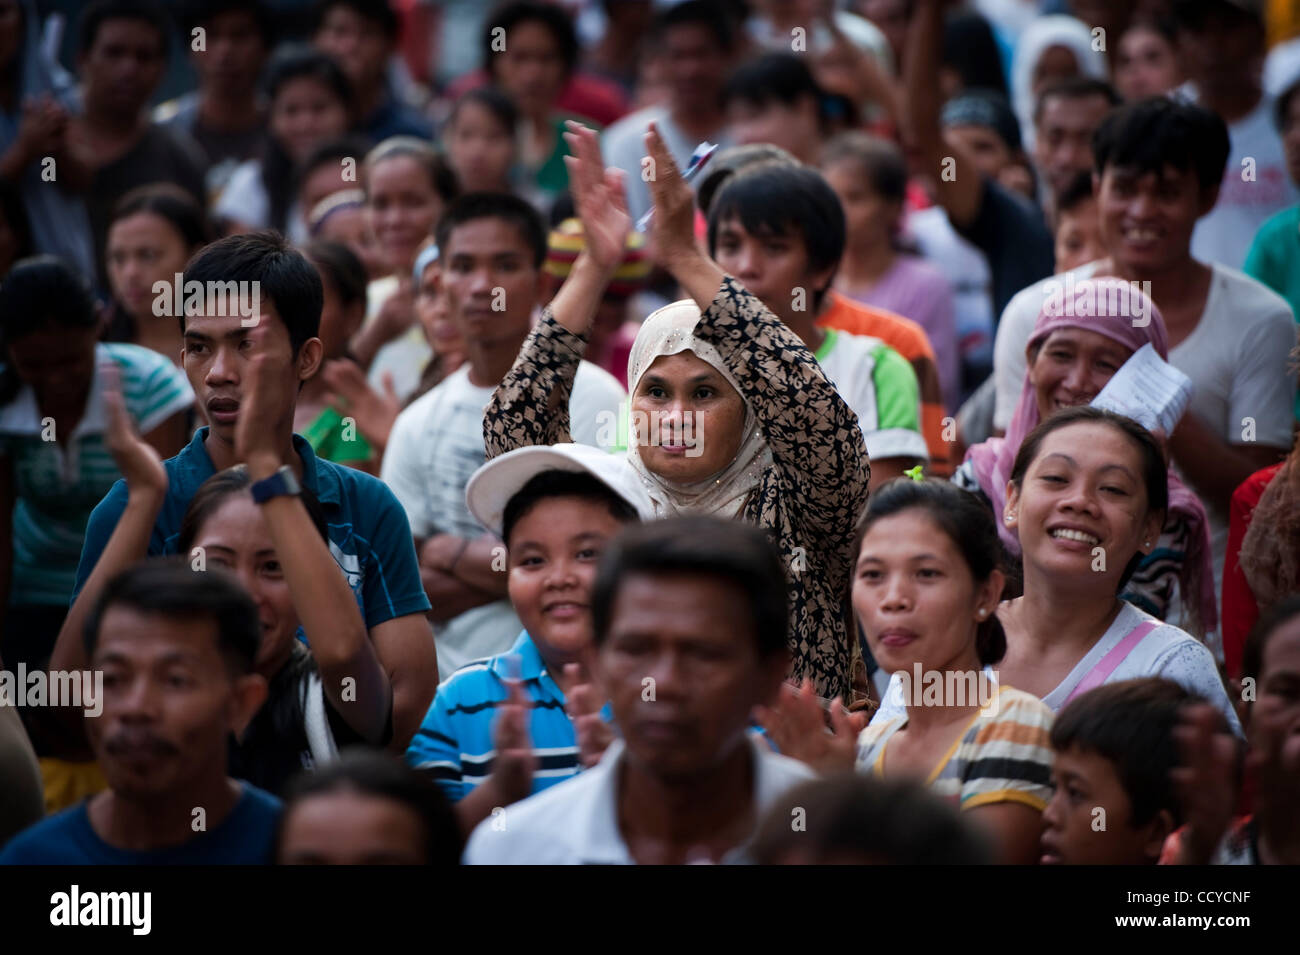 03 mai 2010 - La ville de Cotabato, Mindanao, Philippines - partisan de la ''Coalition pour le changement'' Campagne électorale tenue le 03 mai 2010 à Cotabato City, Philippines Mindanao..les Forces armées des Philippines (AFP) sont en alerte rouge comme les élections aux Philippines sont accompagnés d'une montée de la violence Banque D'Images